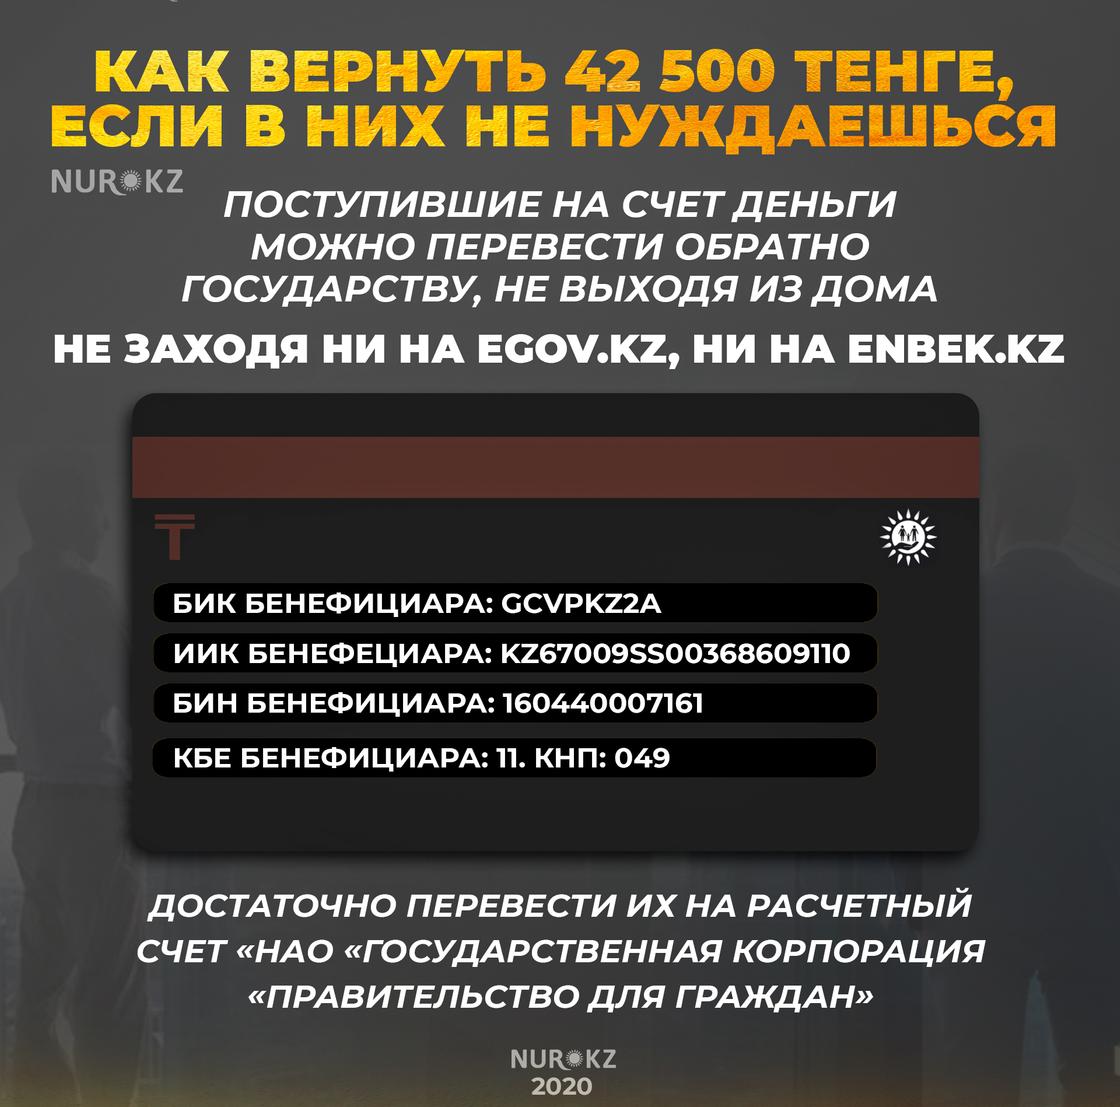 Как казахстанцы могут вернуть 42 500 тенге, если они в них не нуждаются